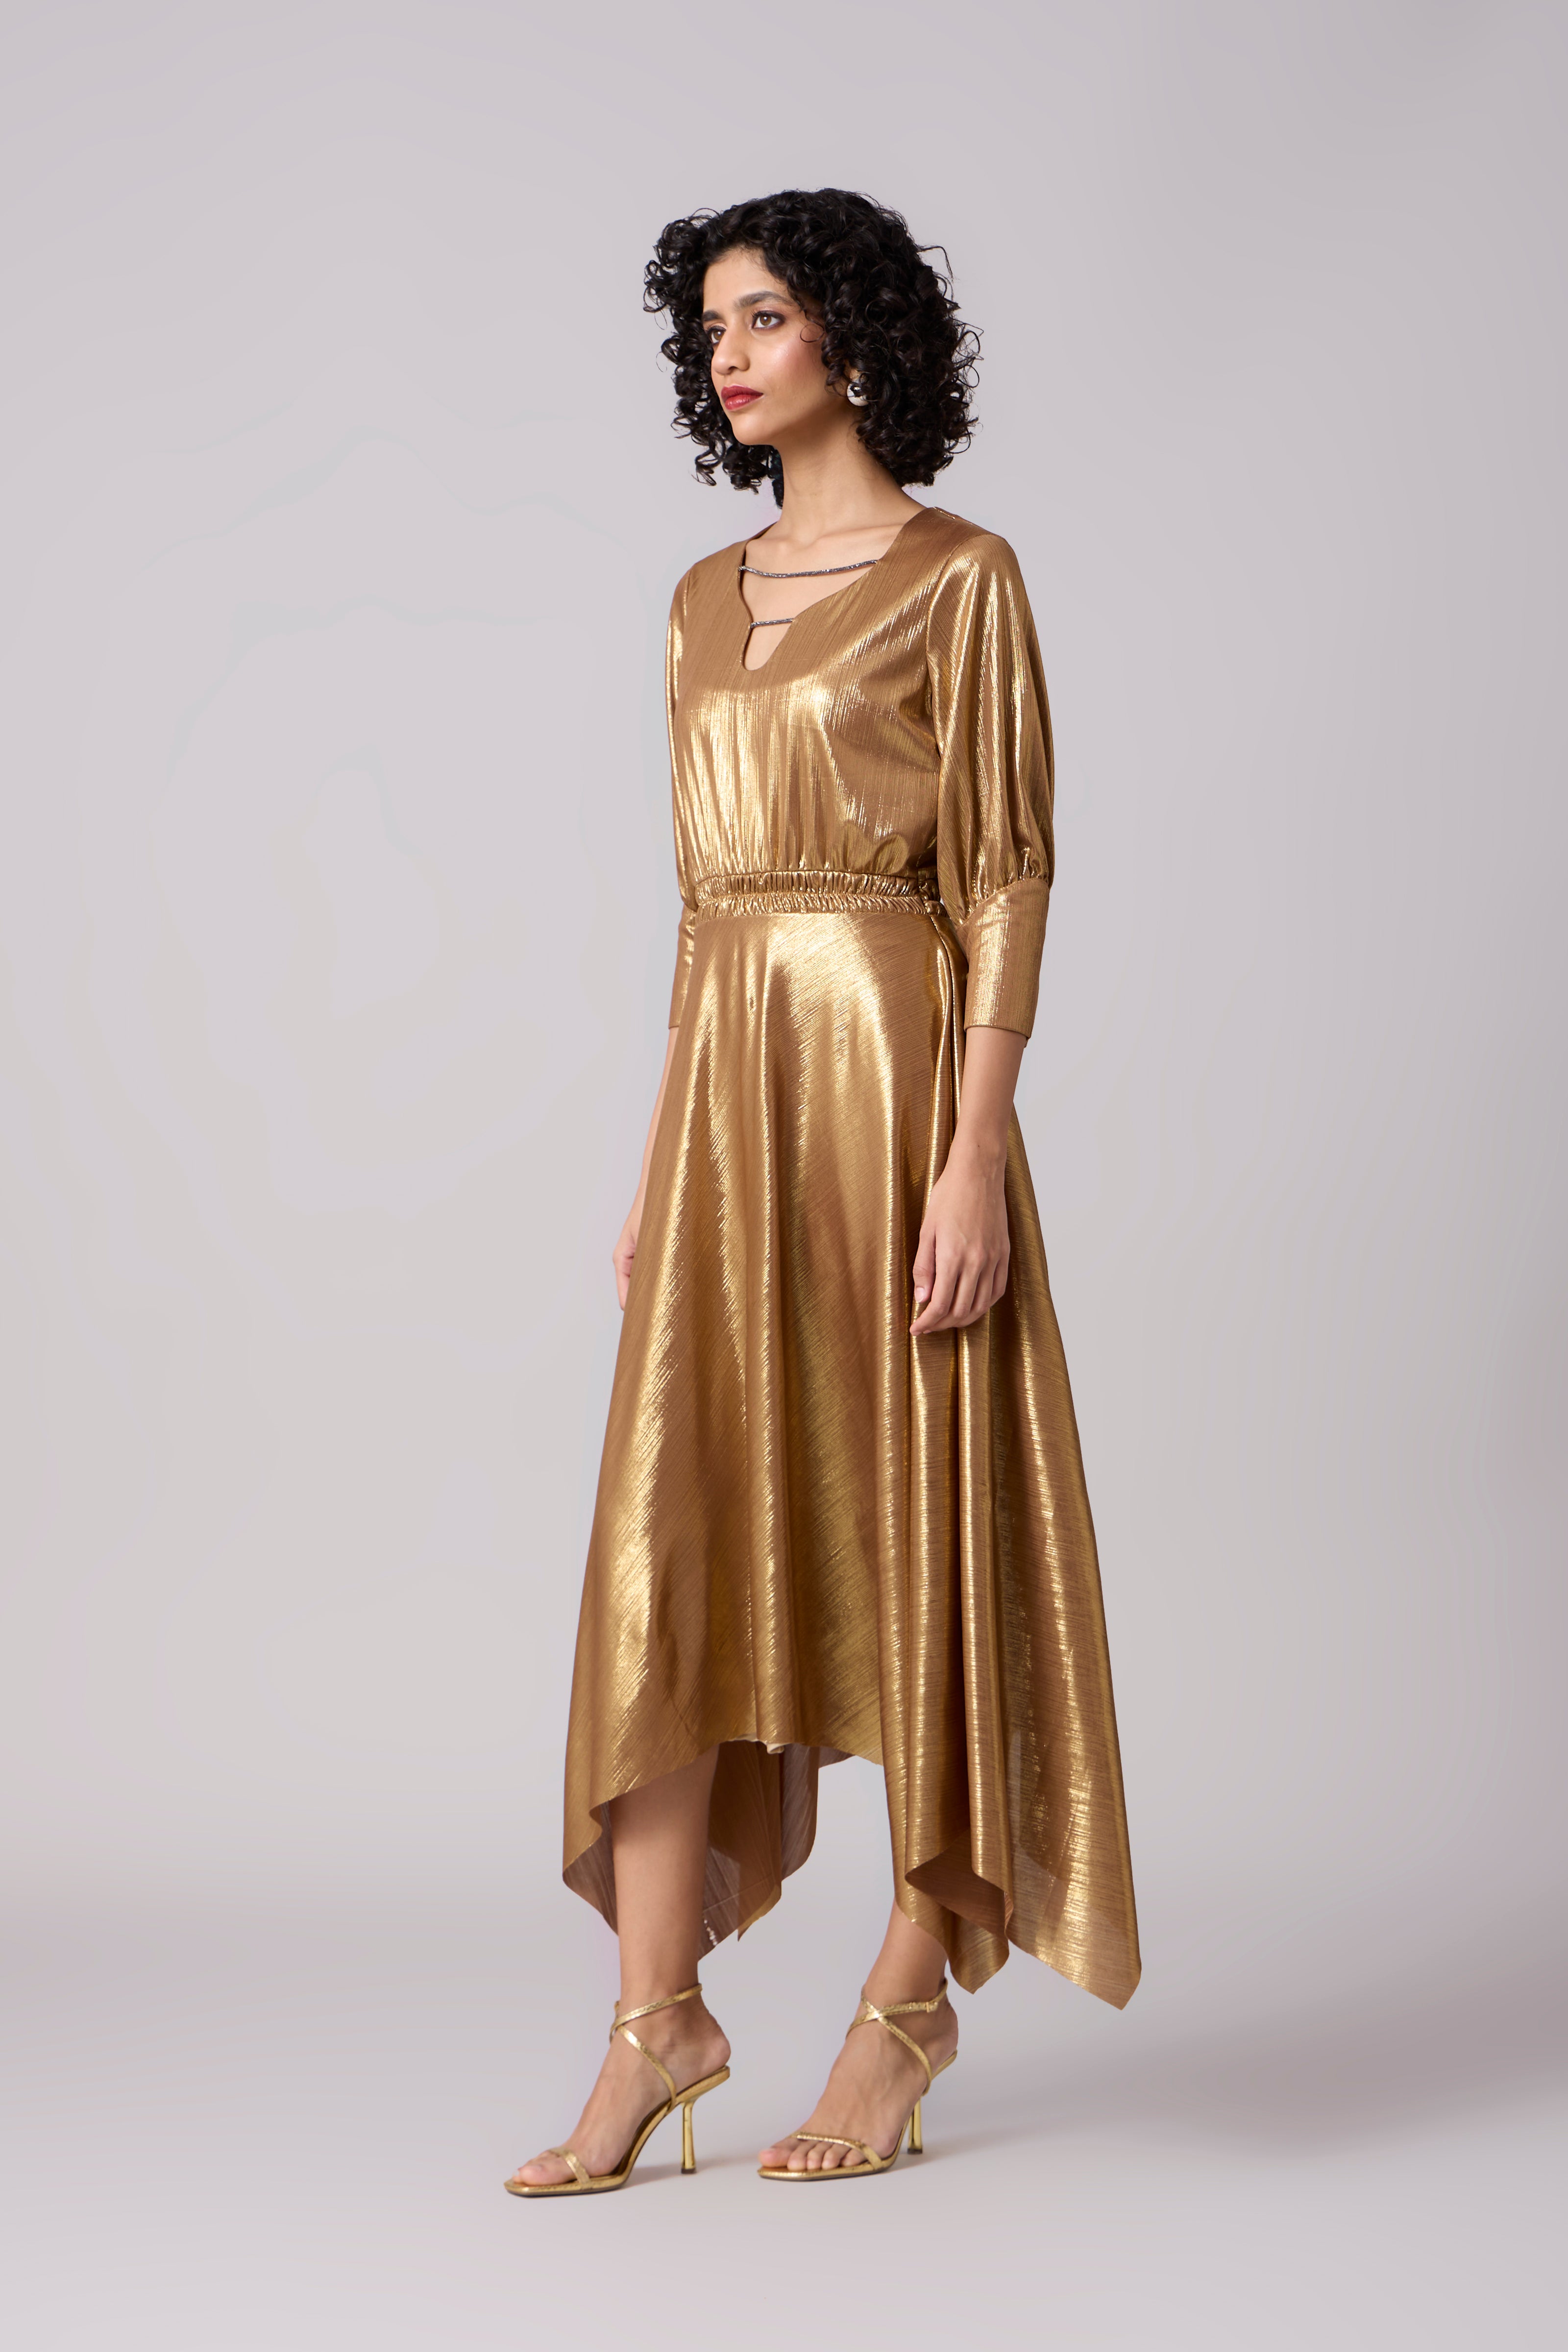 Elen Dress - Gold